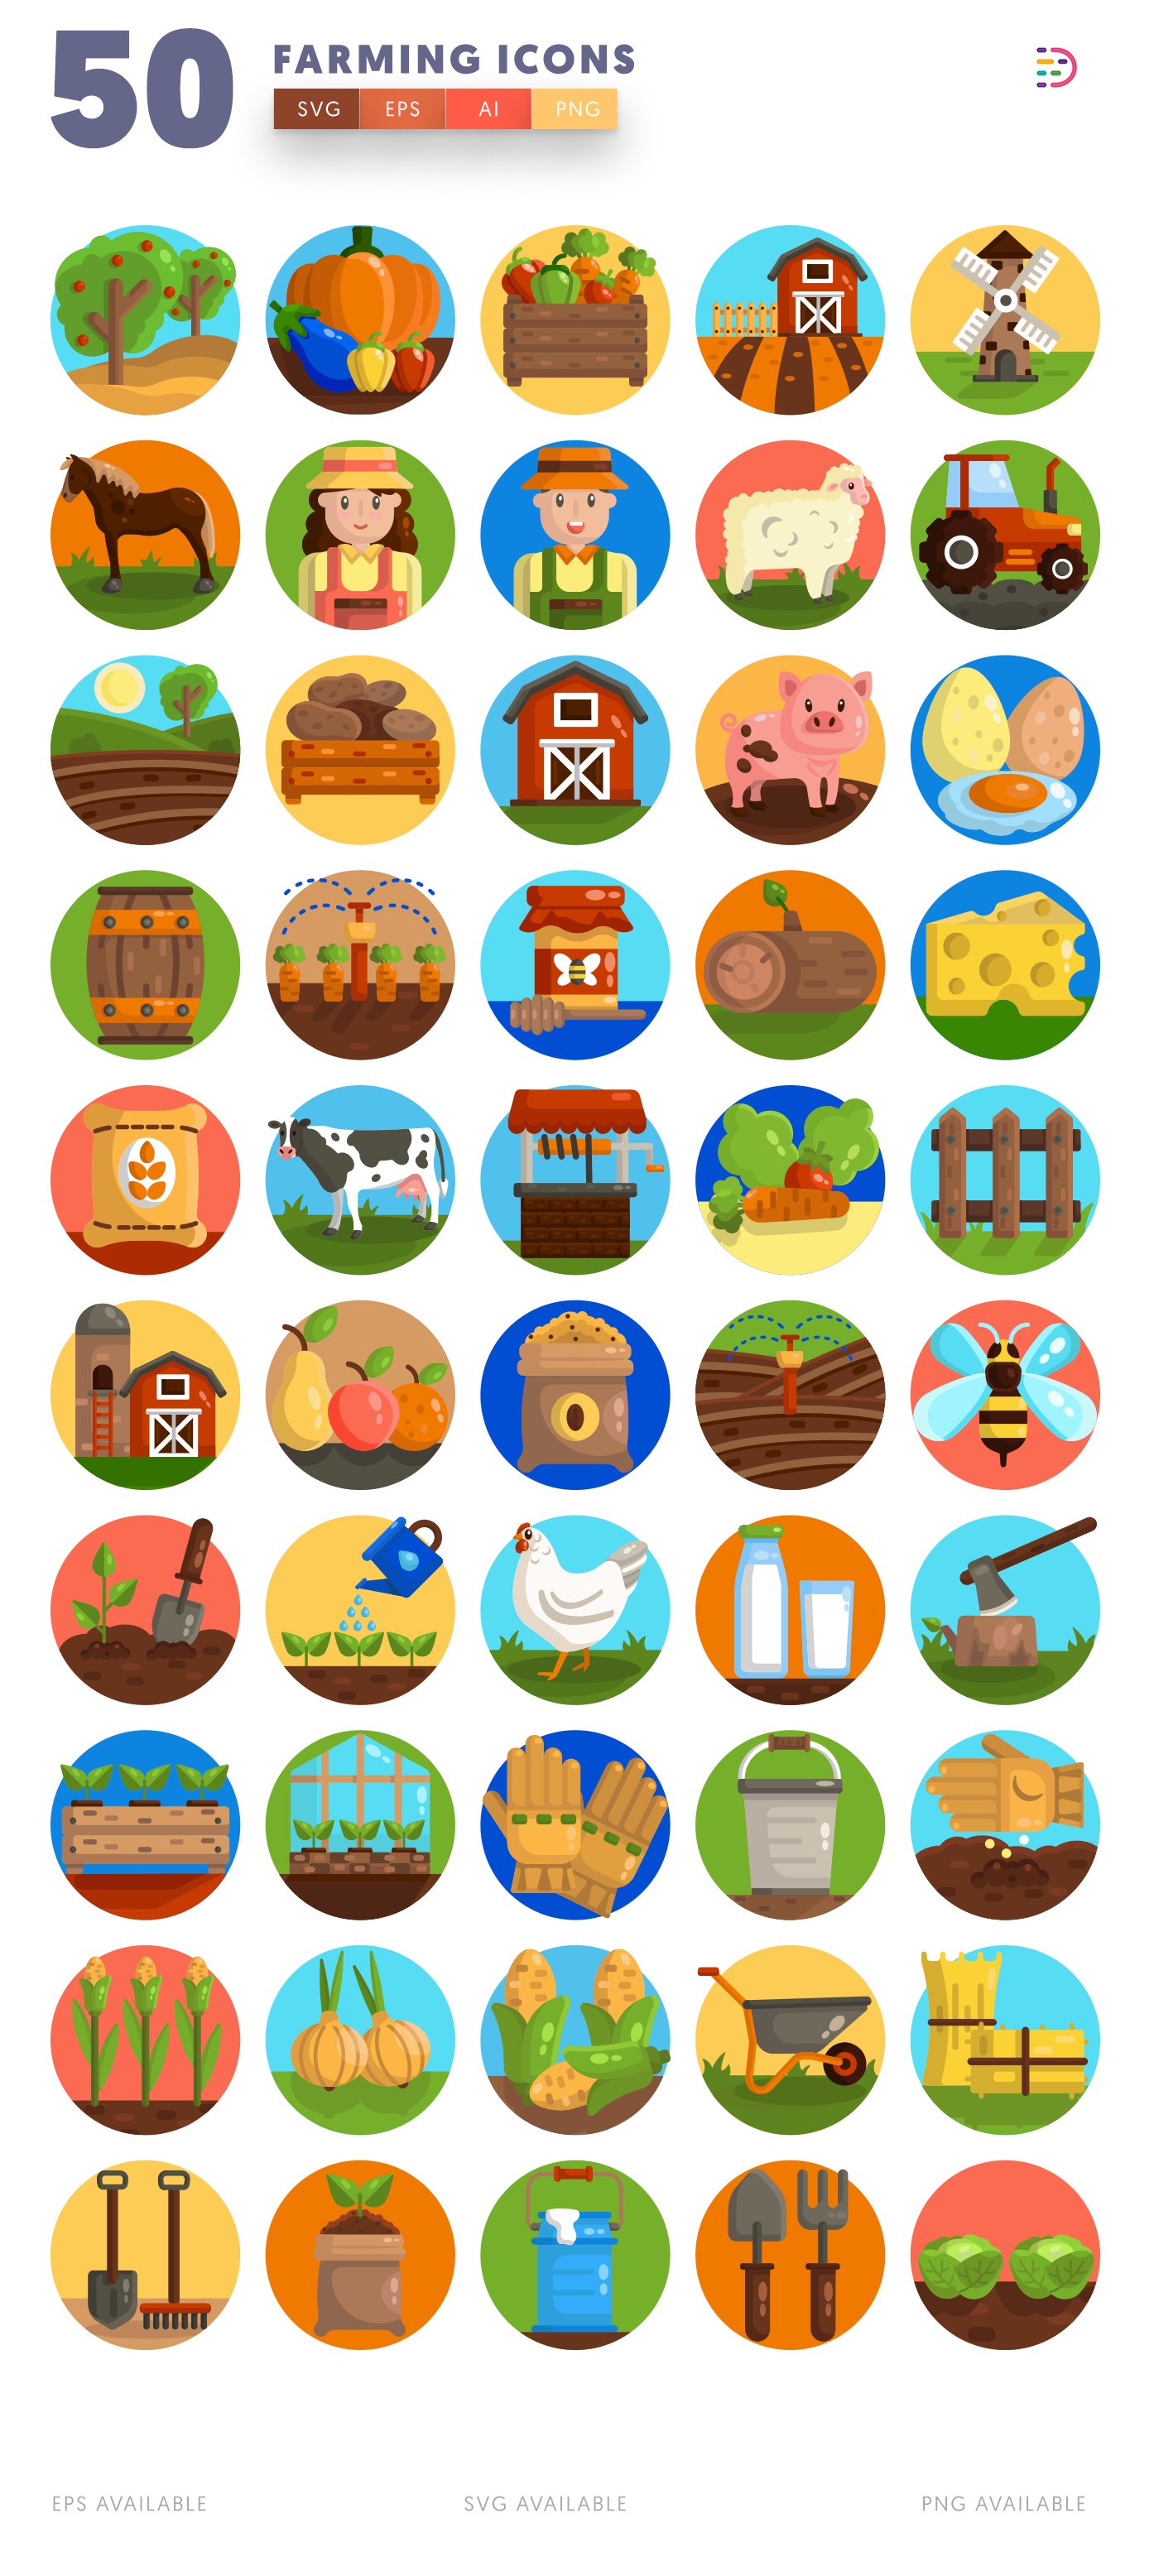 farming icons 2 845